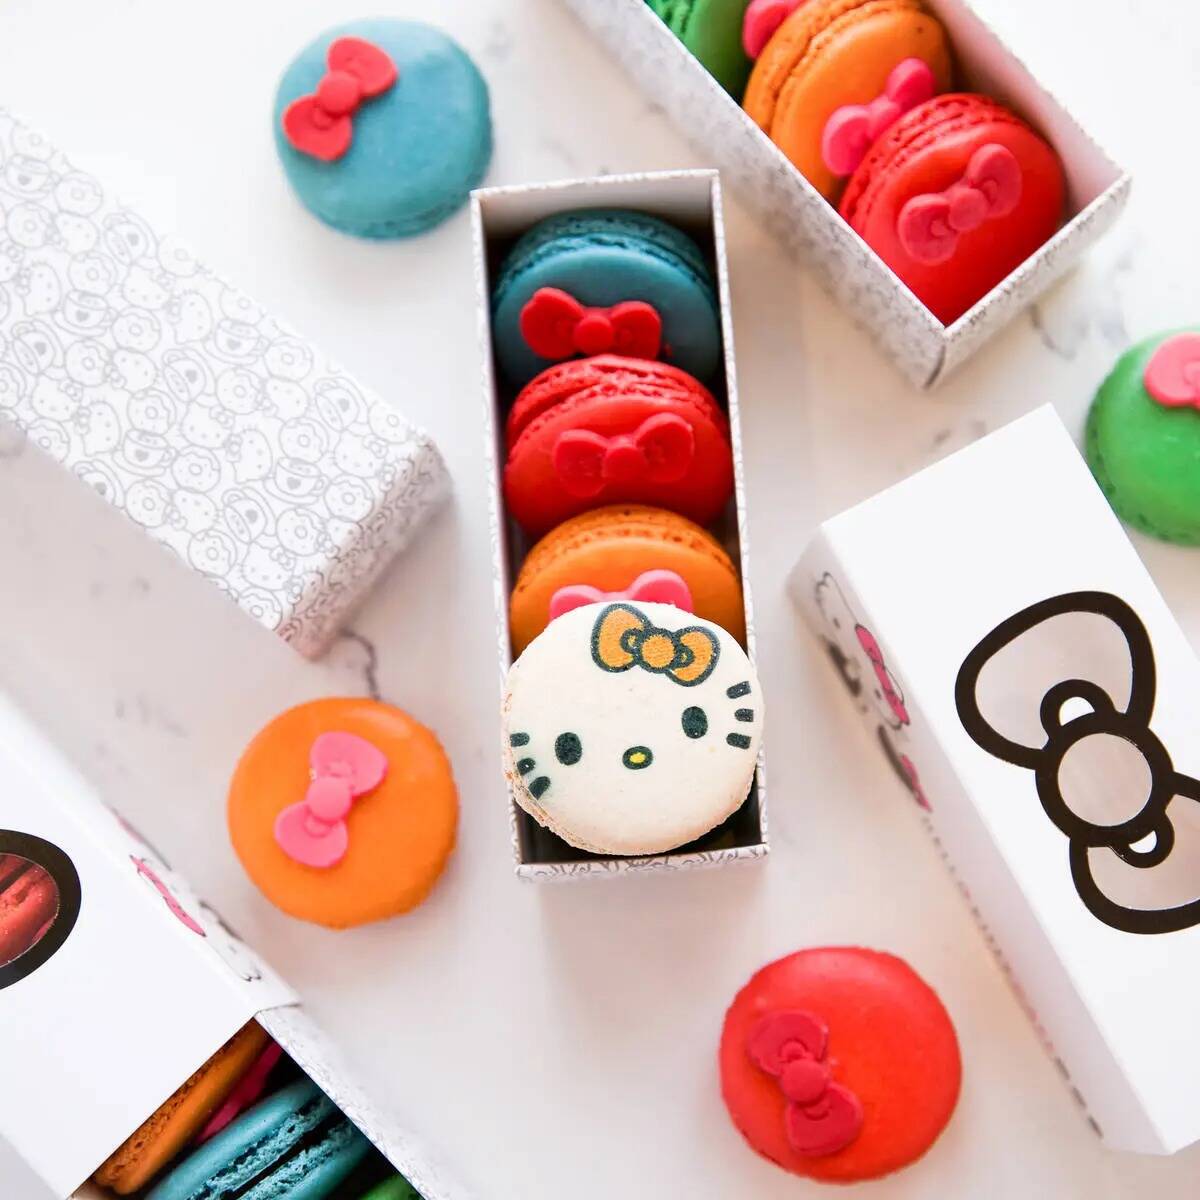 Un paquete de galletas decoradas con Hello Kitty se encuentra entre los artículos que se ofrec ...